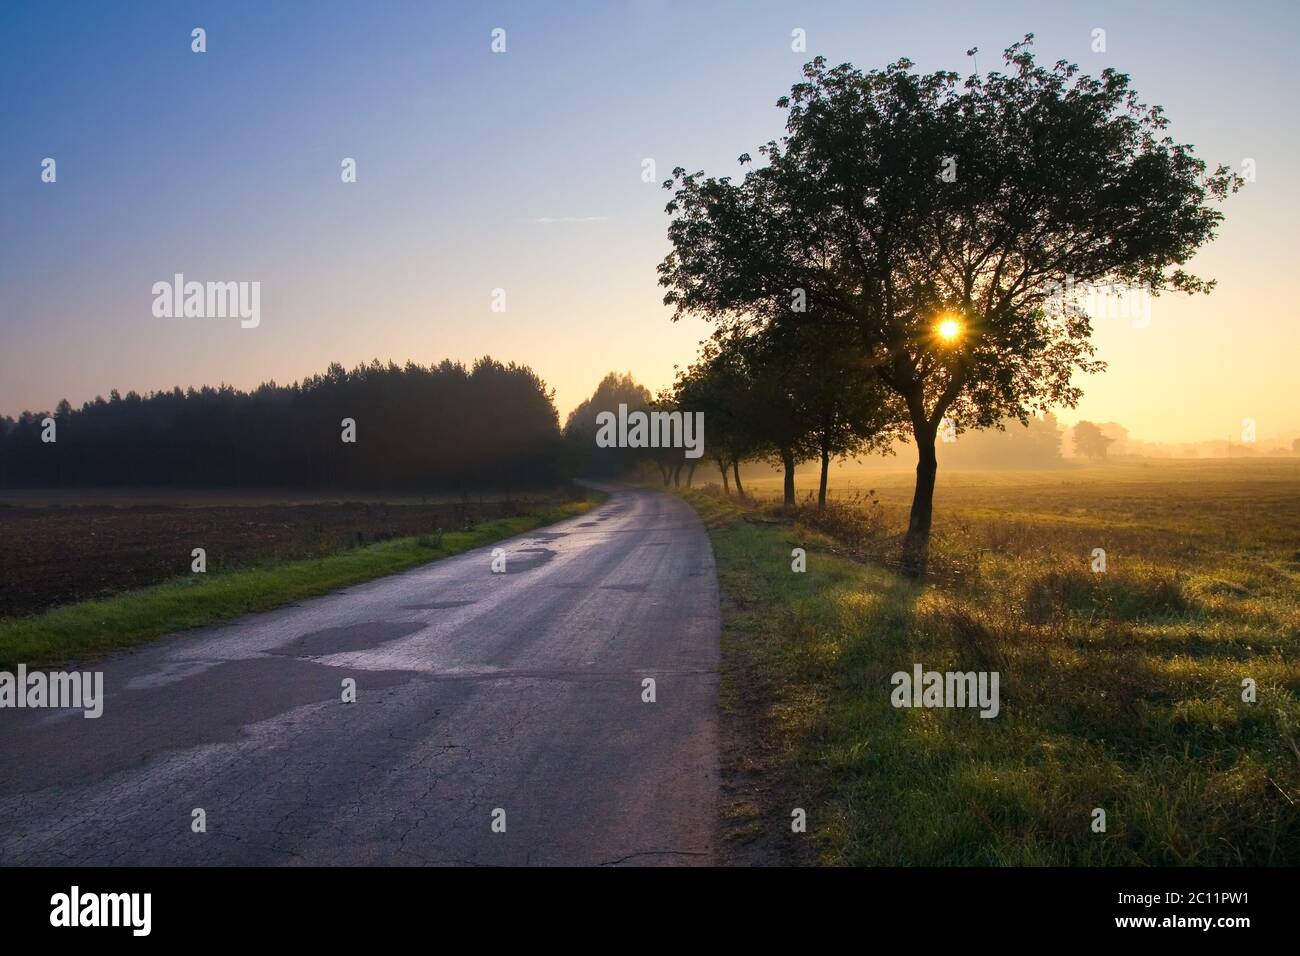 asfalto strada rurale vicino villaggio fotografato in buona luce d'ora d'oro Foto Stock